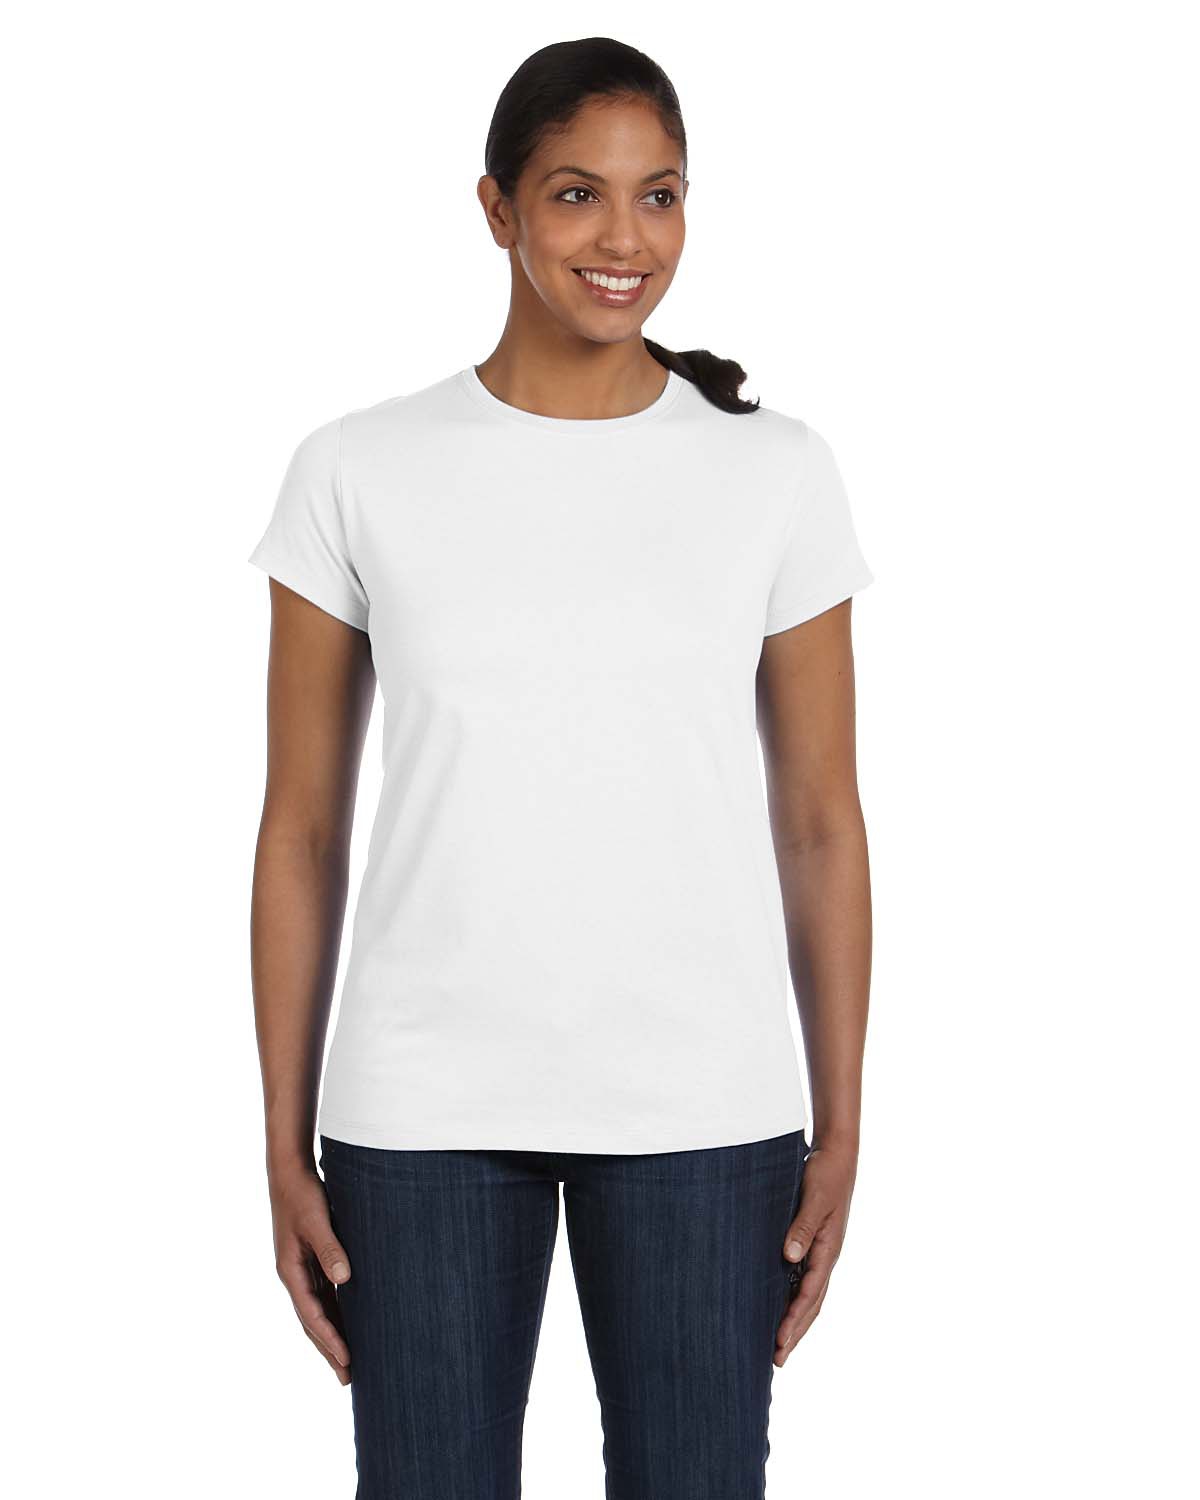 Tagless Womens T-Shirt 5680 Hanes